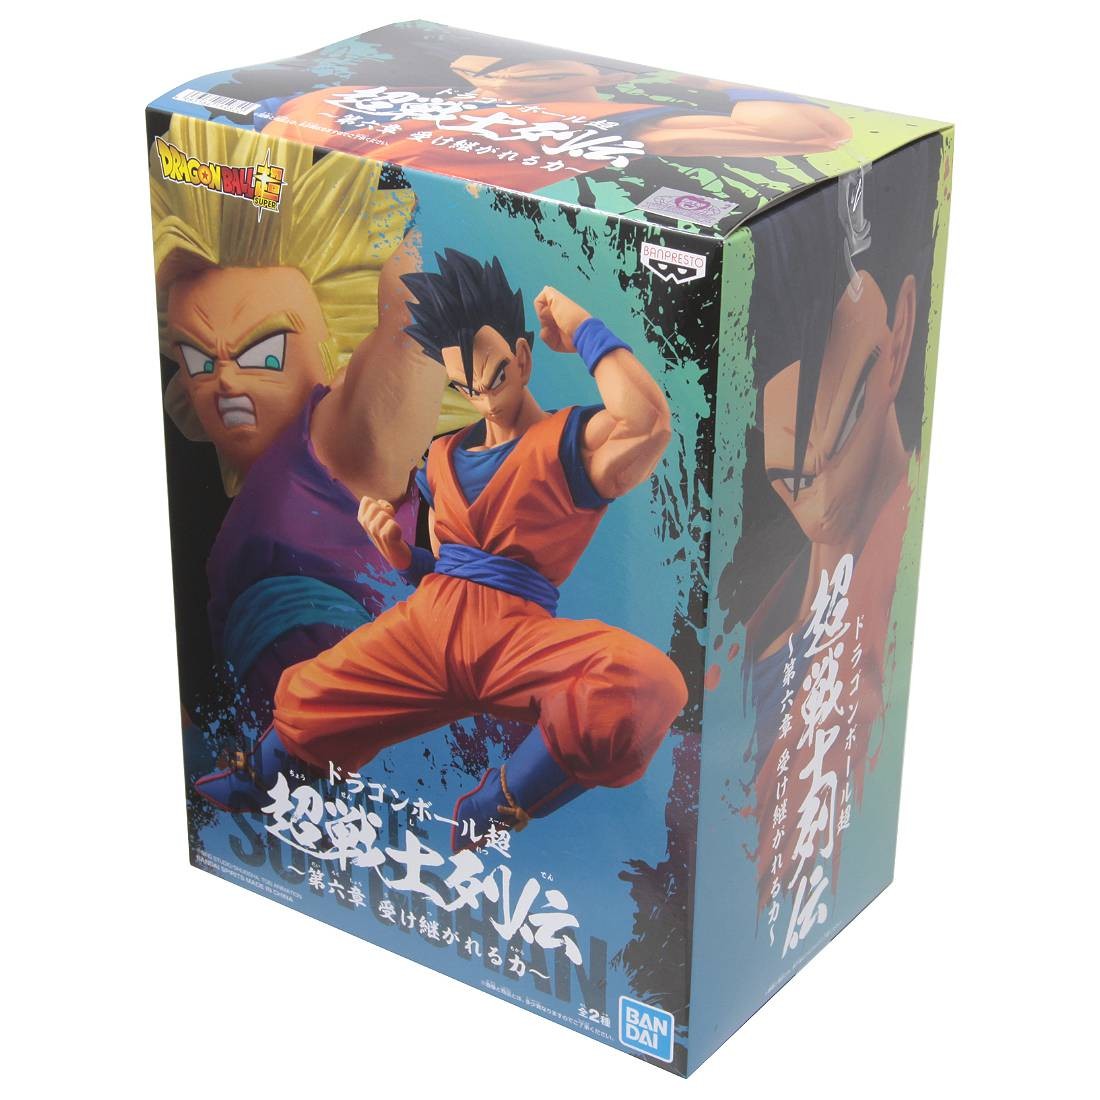 Dragon Ball Super Vol. 6